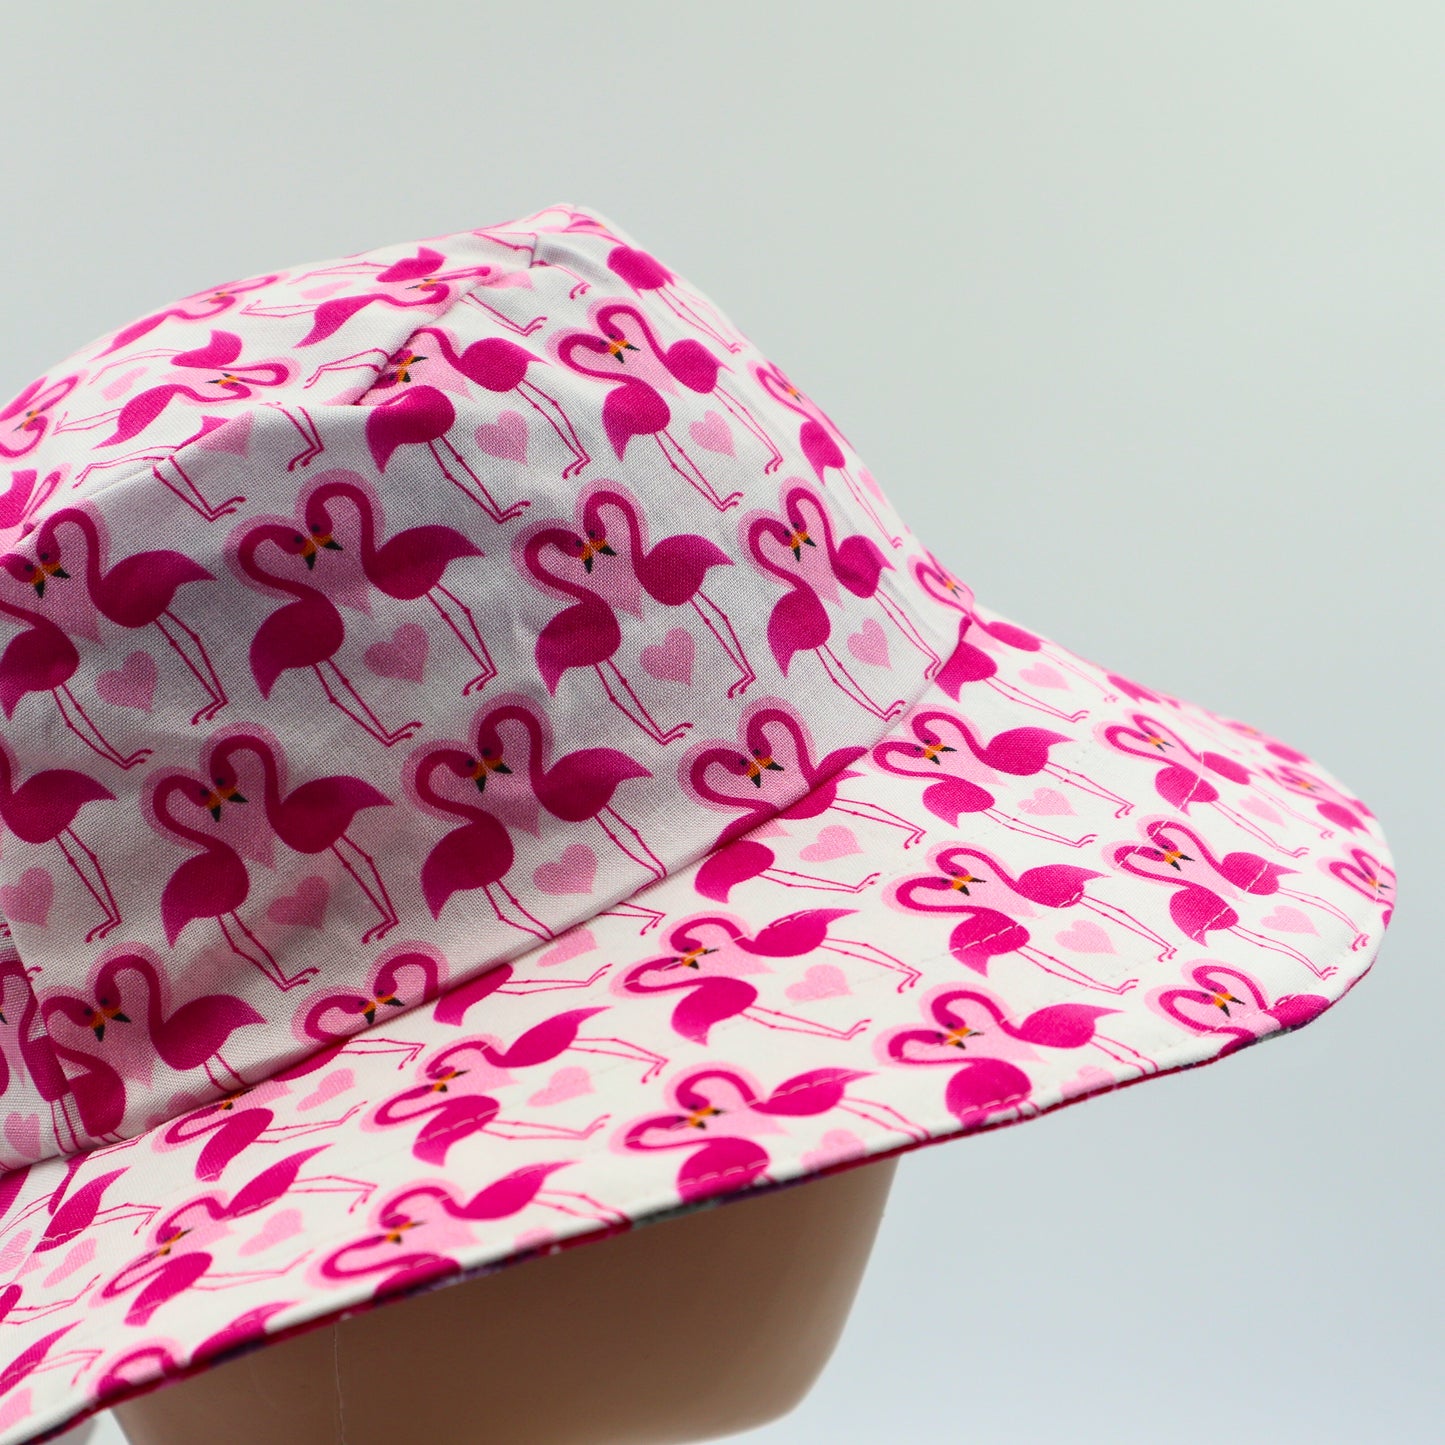 Reversible Sun Hat - Ladies & Girls sizes - flamingo / pink floral